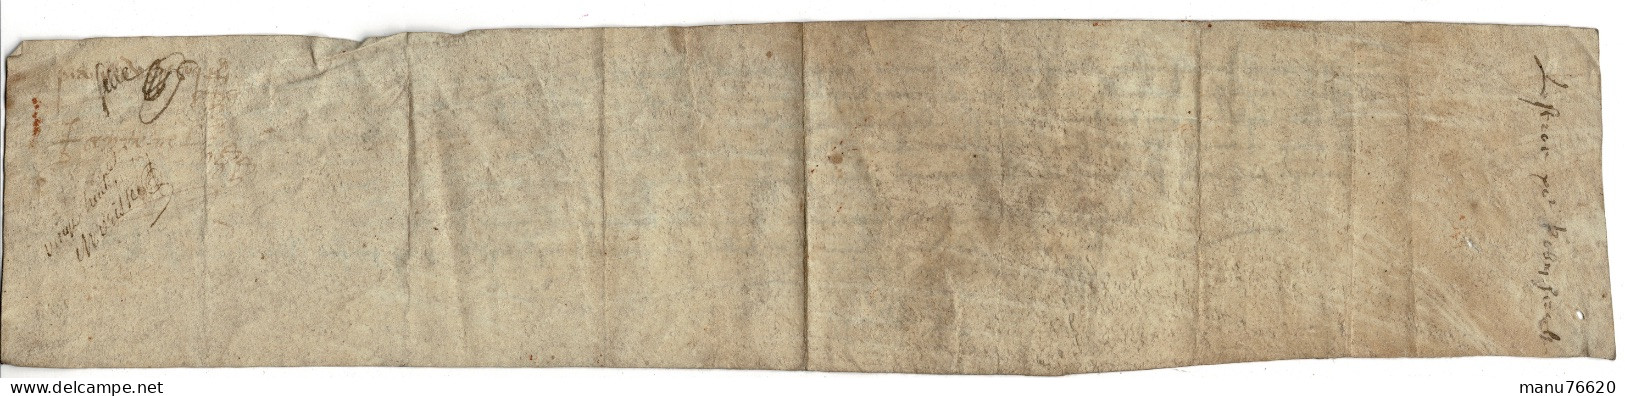 Ref 2 - RARE!, Lettre Manuscrite , Document Notarial , Le Havre Et Environs , écritures Très Anciennes , Papier épais. - Manuscrits